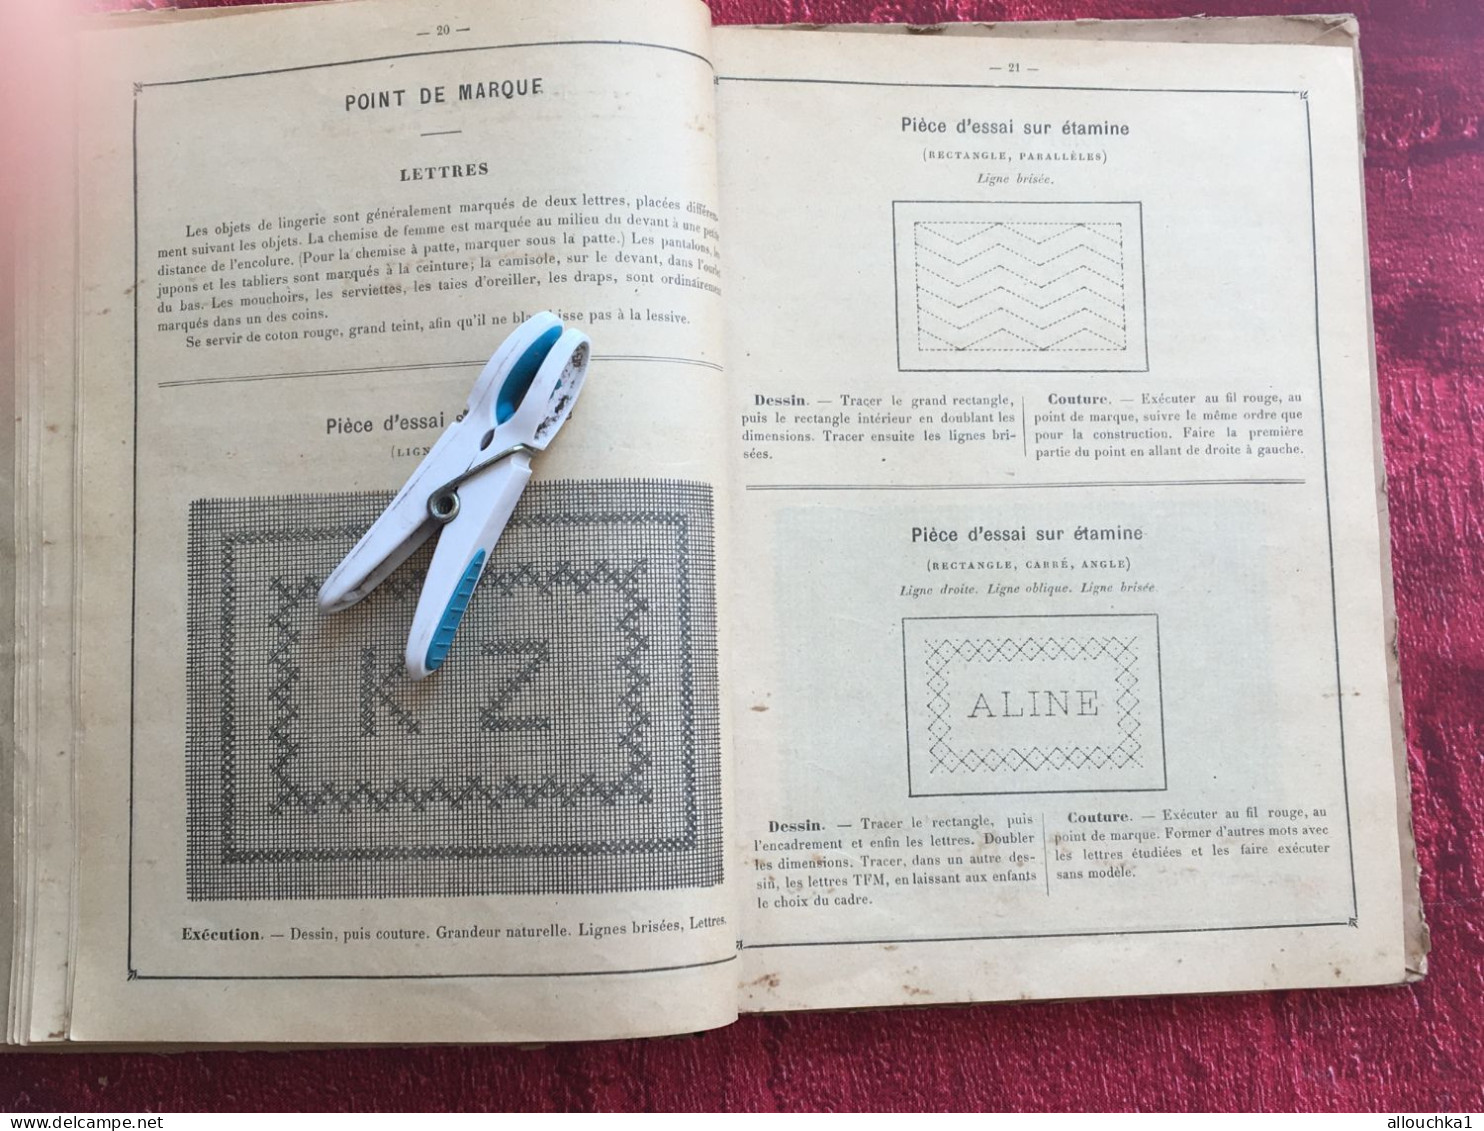 RARE -1898 France Méthode-Album-Cahier : Couture usuelle-Point de marque-Toiles-exercices de raccommodage-Tricot-Crochet